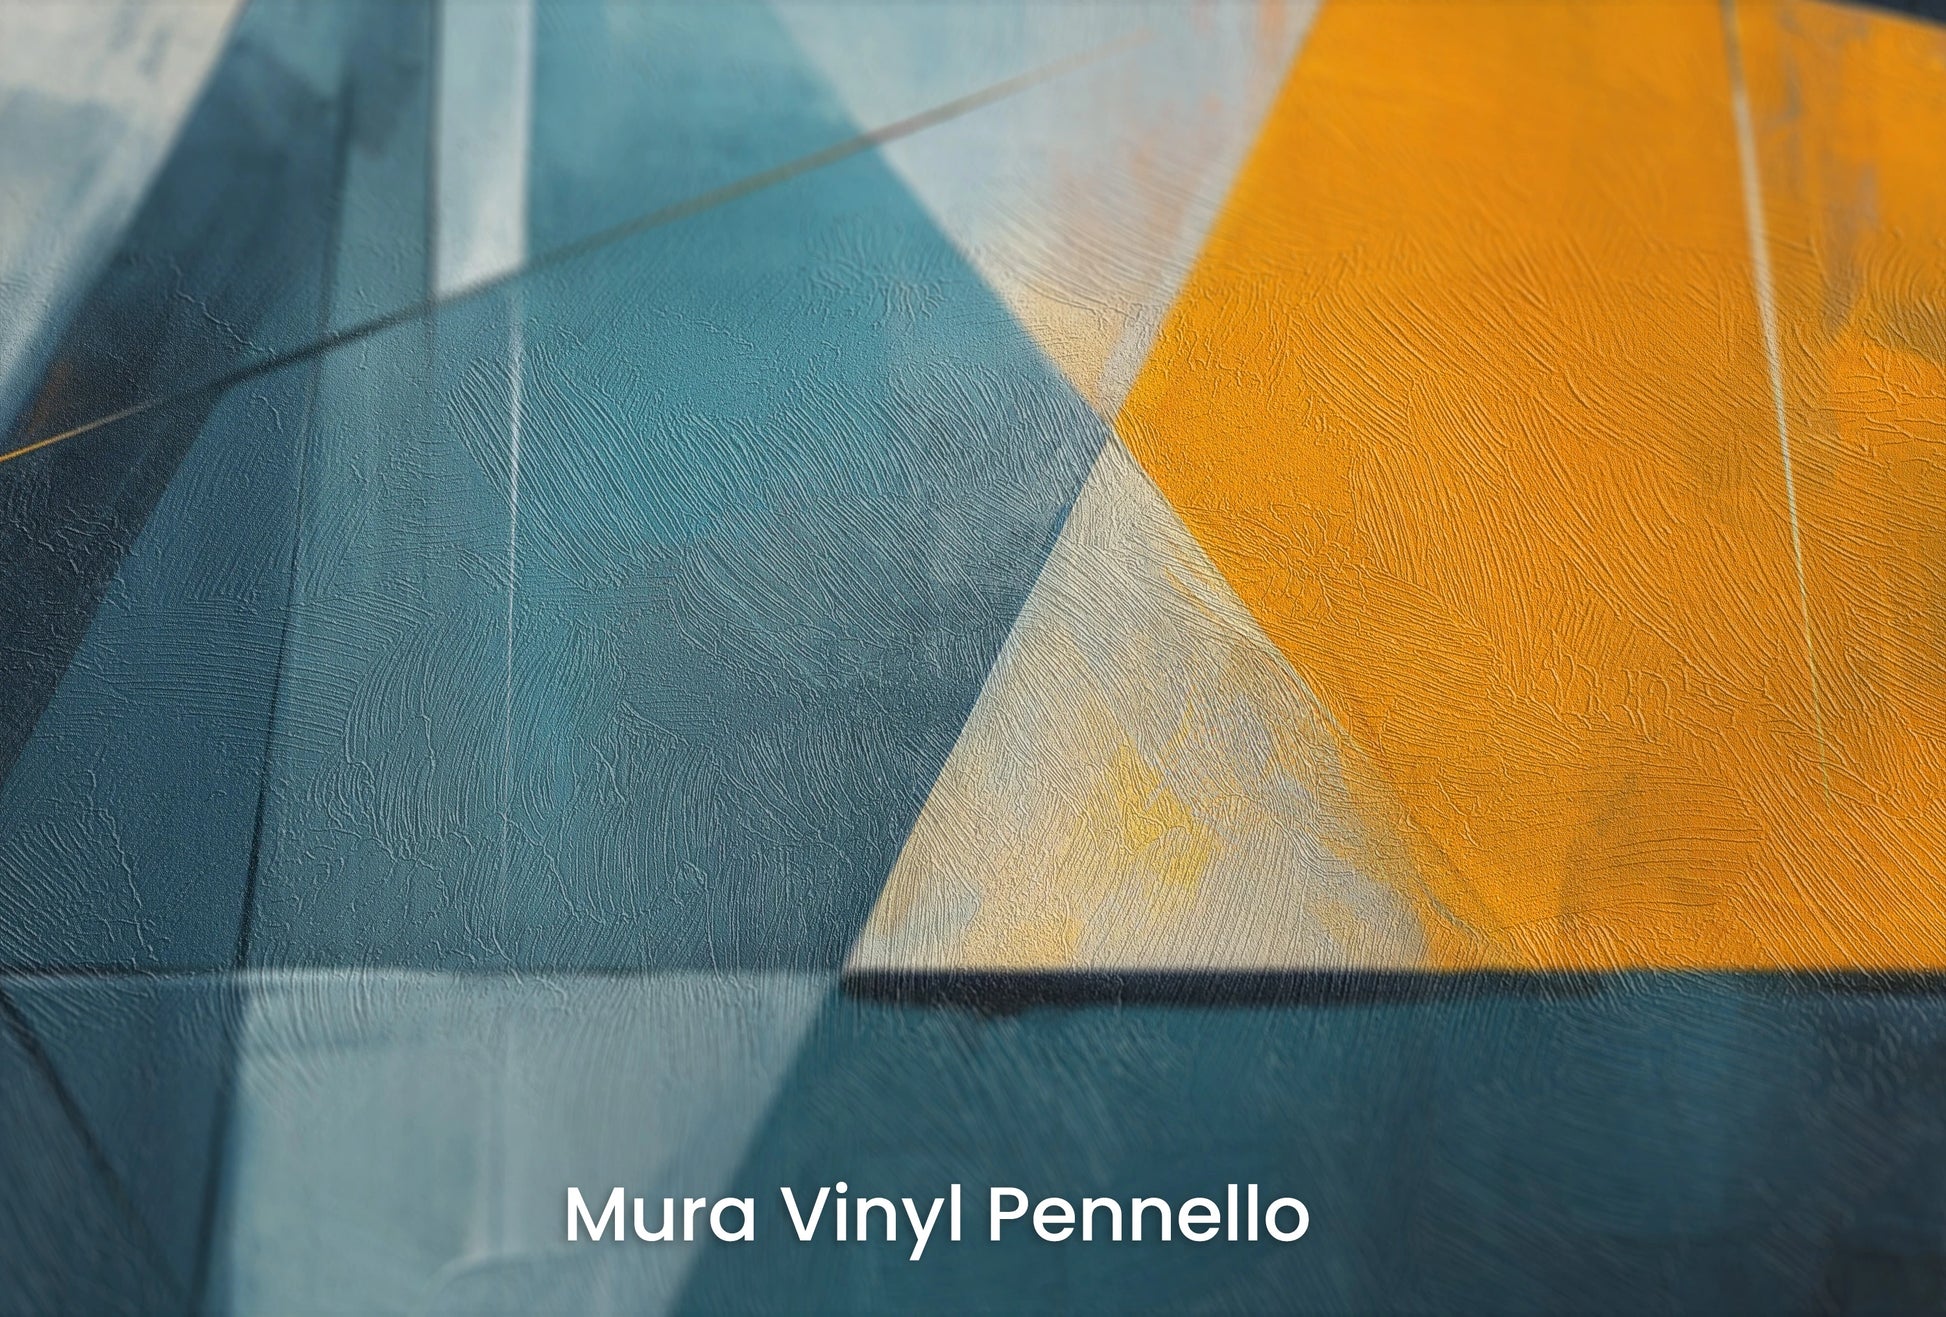 Zbliżenie na artystyczną fototapetę o nazwie Vibrant Geometric Contrast na podłożu Mura Vinyl Pennello - faktura pociągnięć pędzla malarskiego.